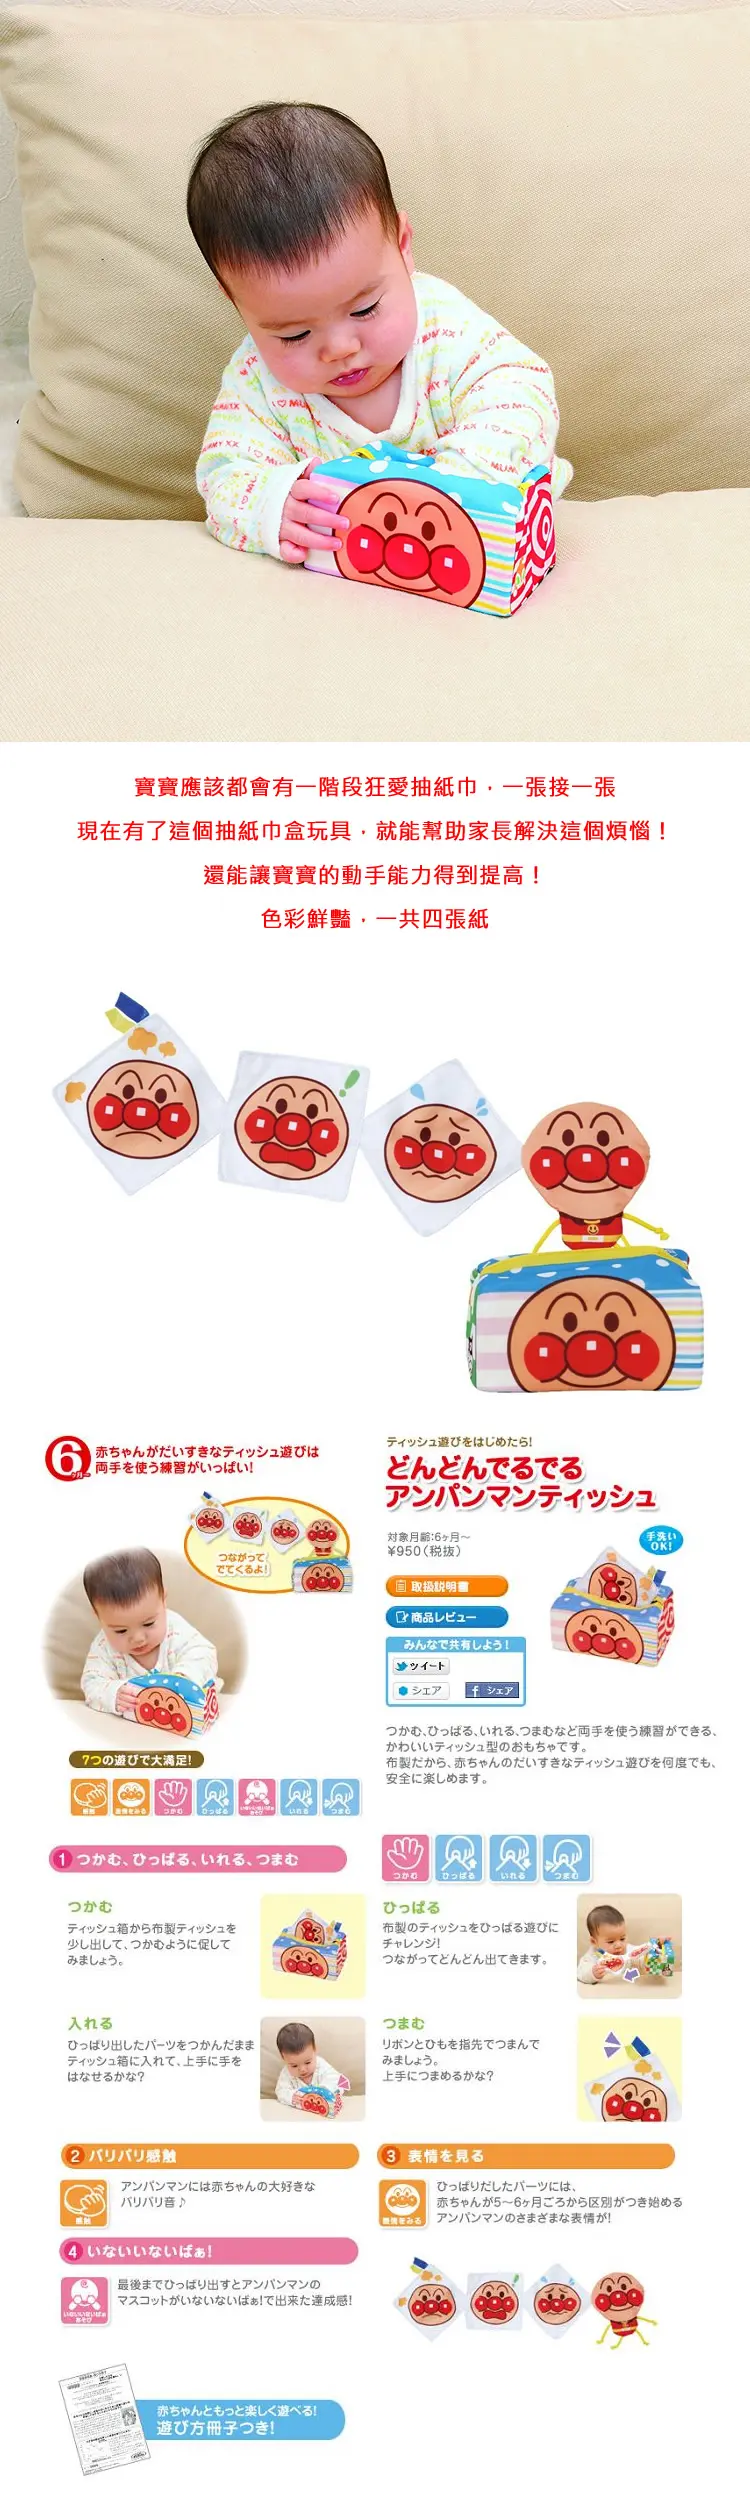 麵包超人 布質奇趣紙巾盒玩具